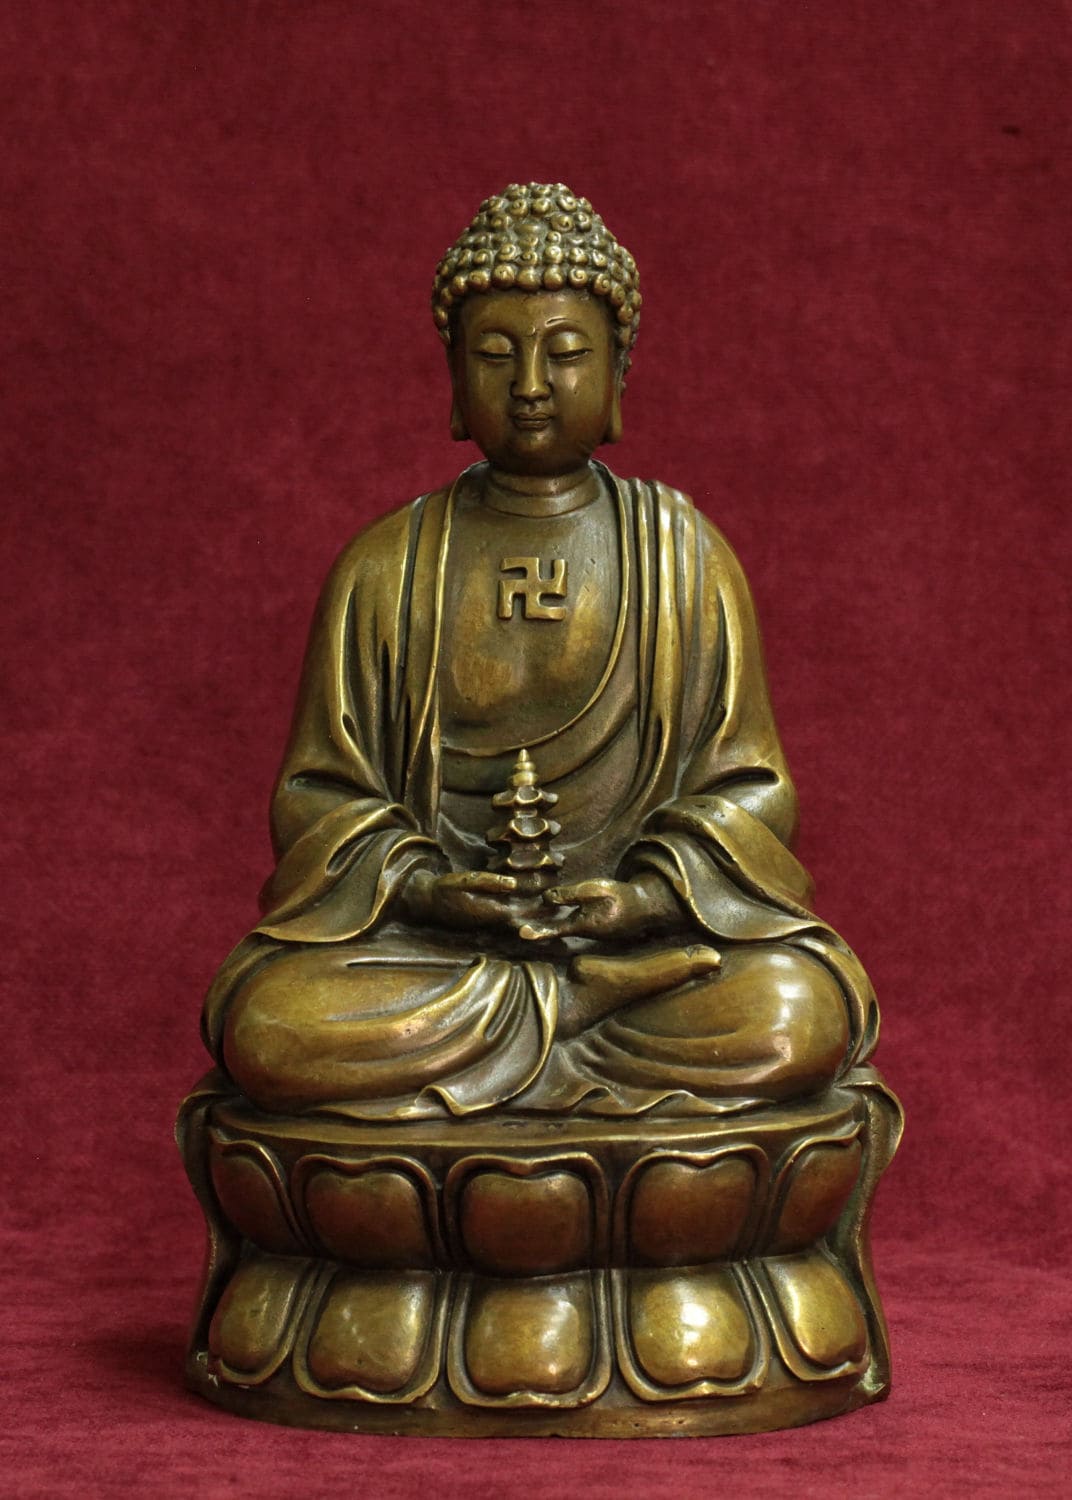 Статуэтка Будда Шакьямуни (свастика), сидящий на цветке лотоса с пагодой в руках.